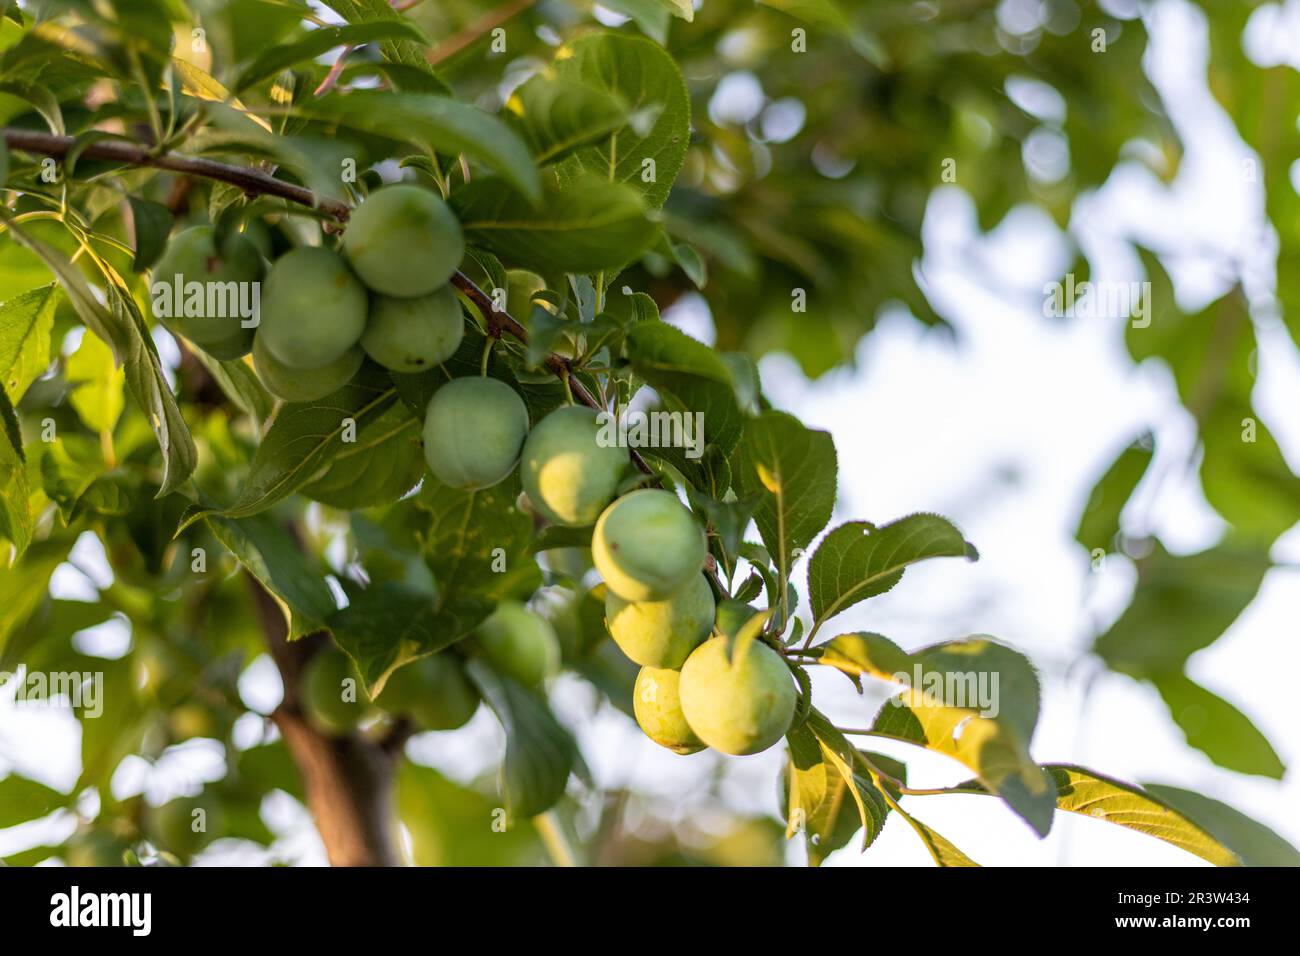 Ein Haufen unreifer, grüner, kleiner Pflaumen auf dem Ast eines Obstbaums Stockfoto